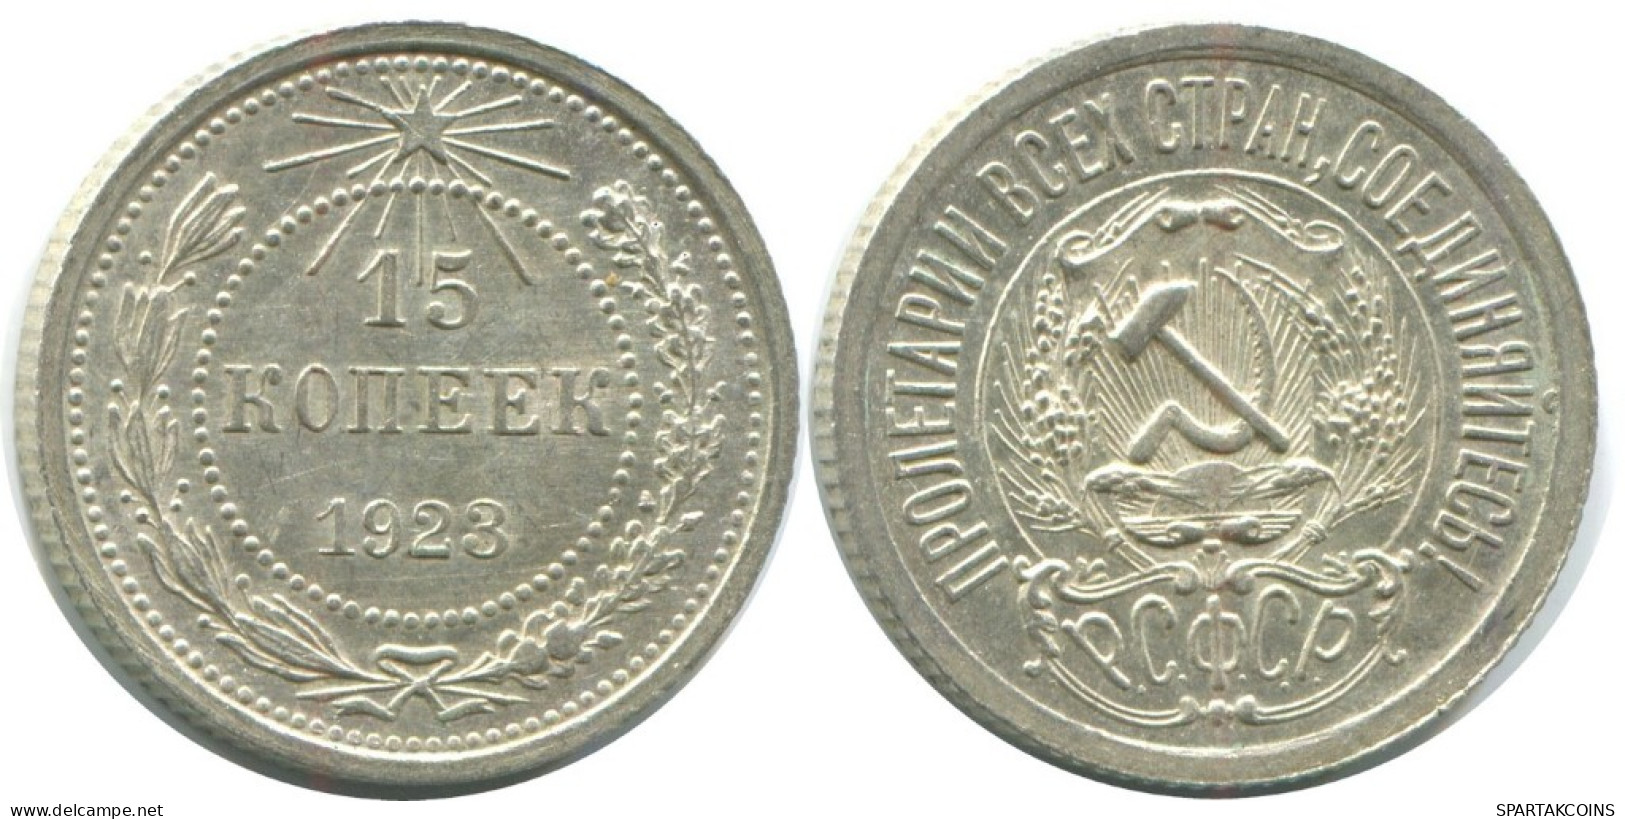 15 KOPEKS 1923 RUSSLAND RUSSIA RSFSR SILBER Münze HIGH GRADE #AF083.4.D.A - Russia